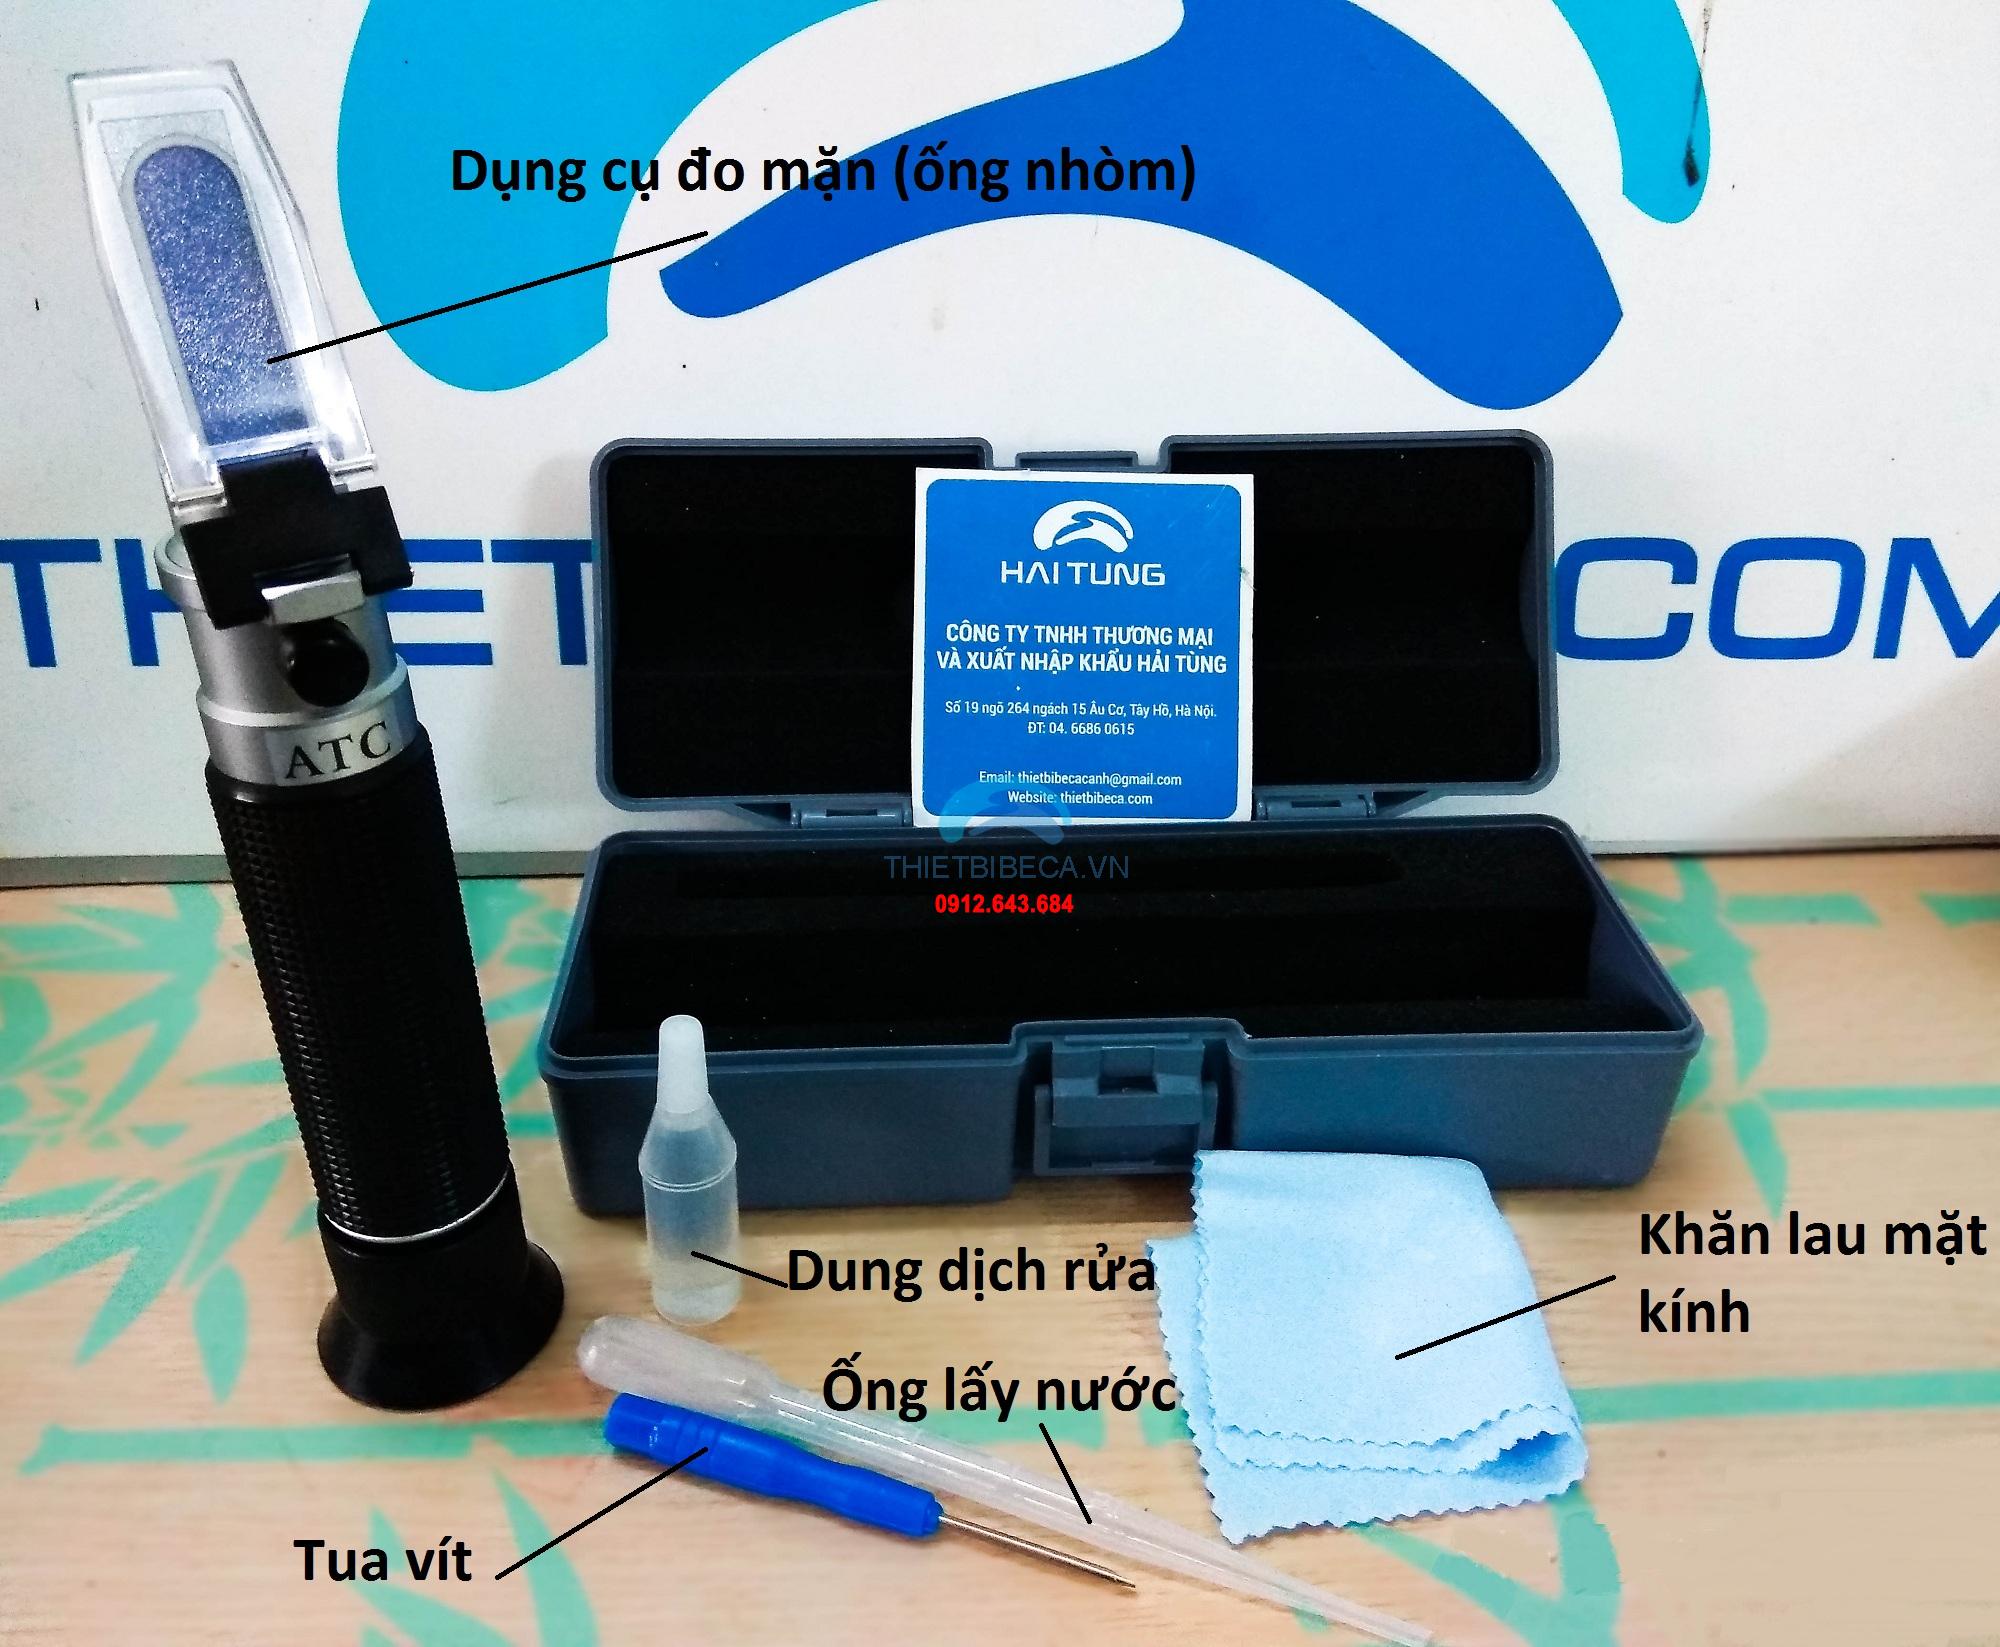 Giới thiệu sản phẩm & cách sử dụng Ống nhòm đo mặn - Khúc xạ kế